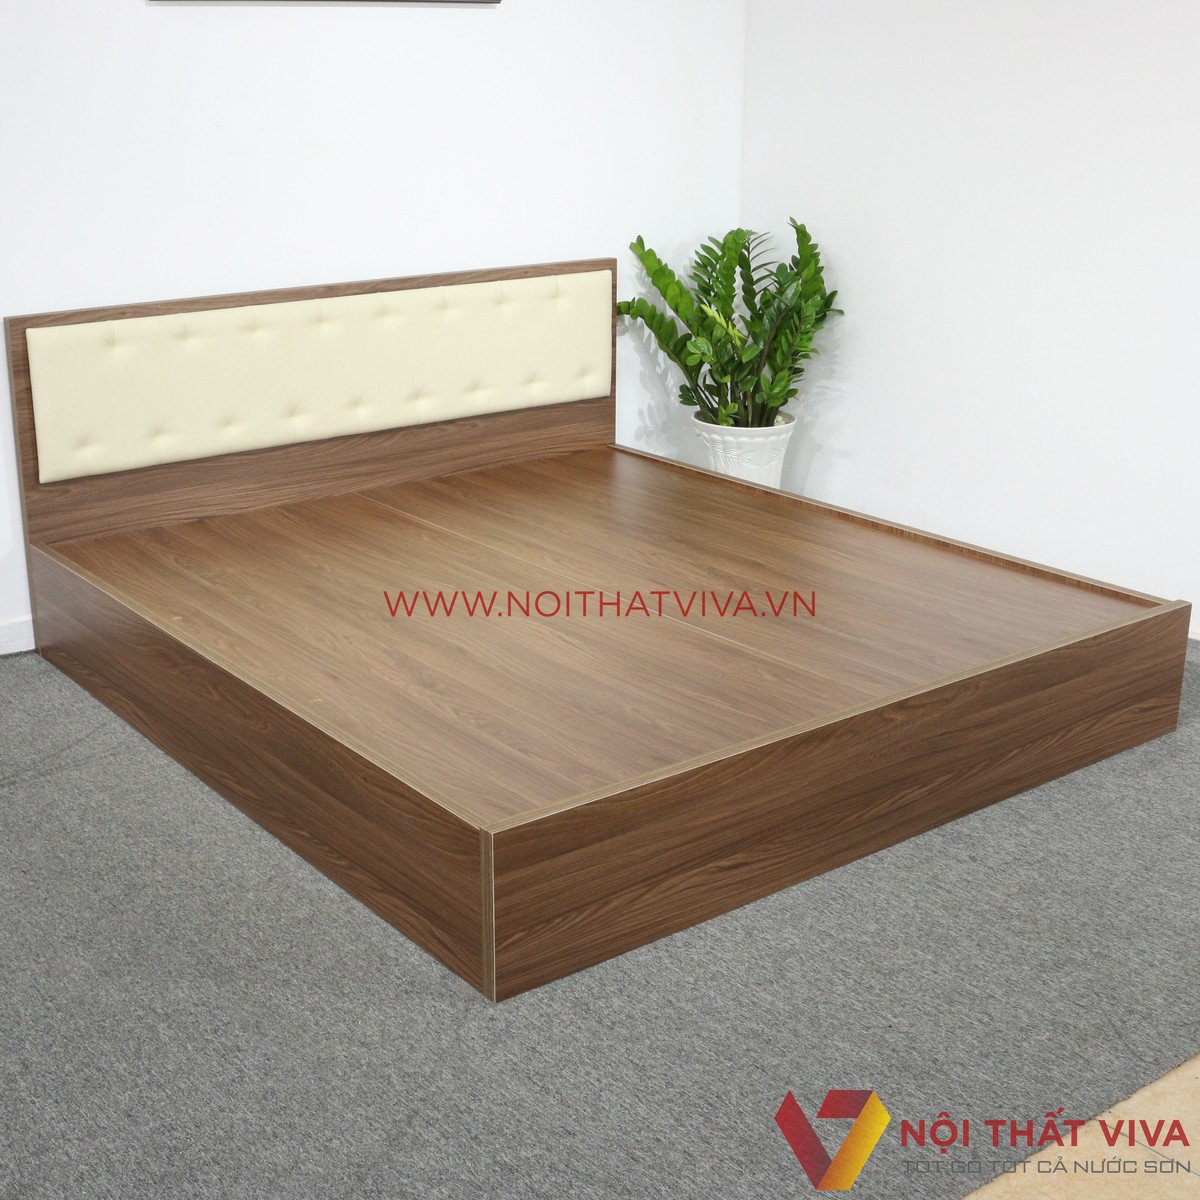 Cập nhật TOP giường gỗ đẹp giá rẻ theo gợi ý từ các chuyên gia